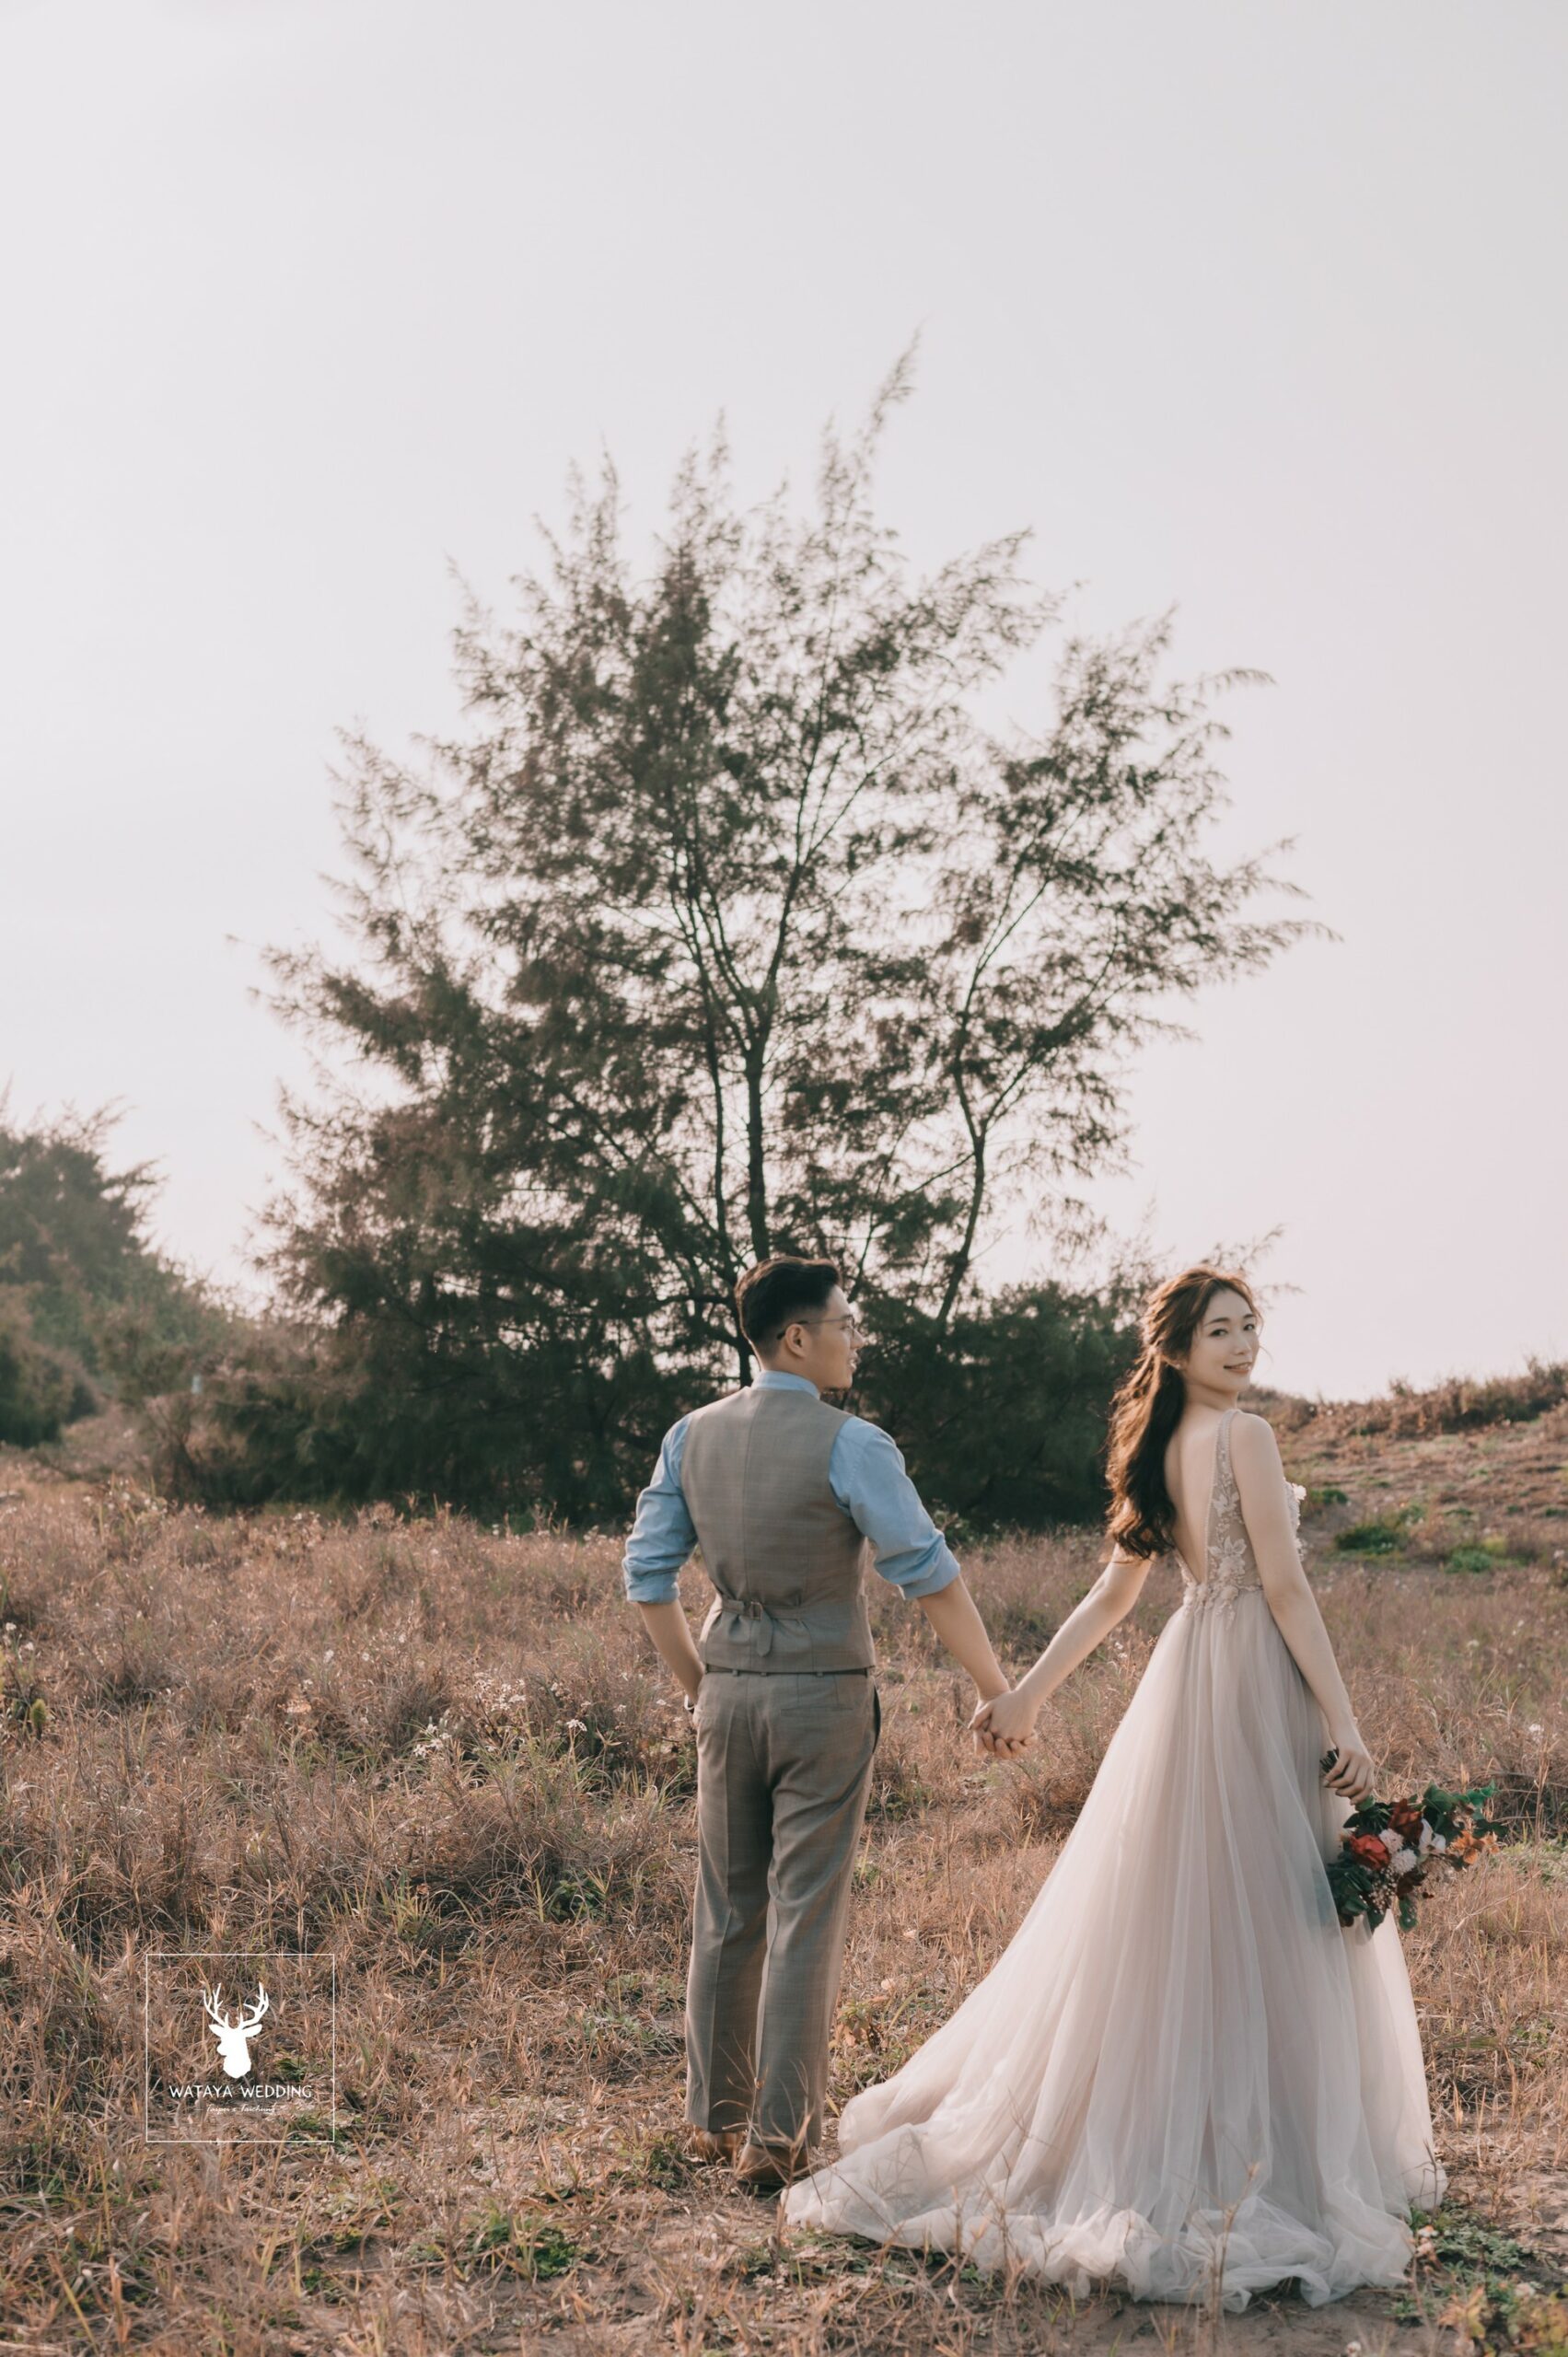 綿谷結婚式-婚紗攝影作品 (37)